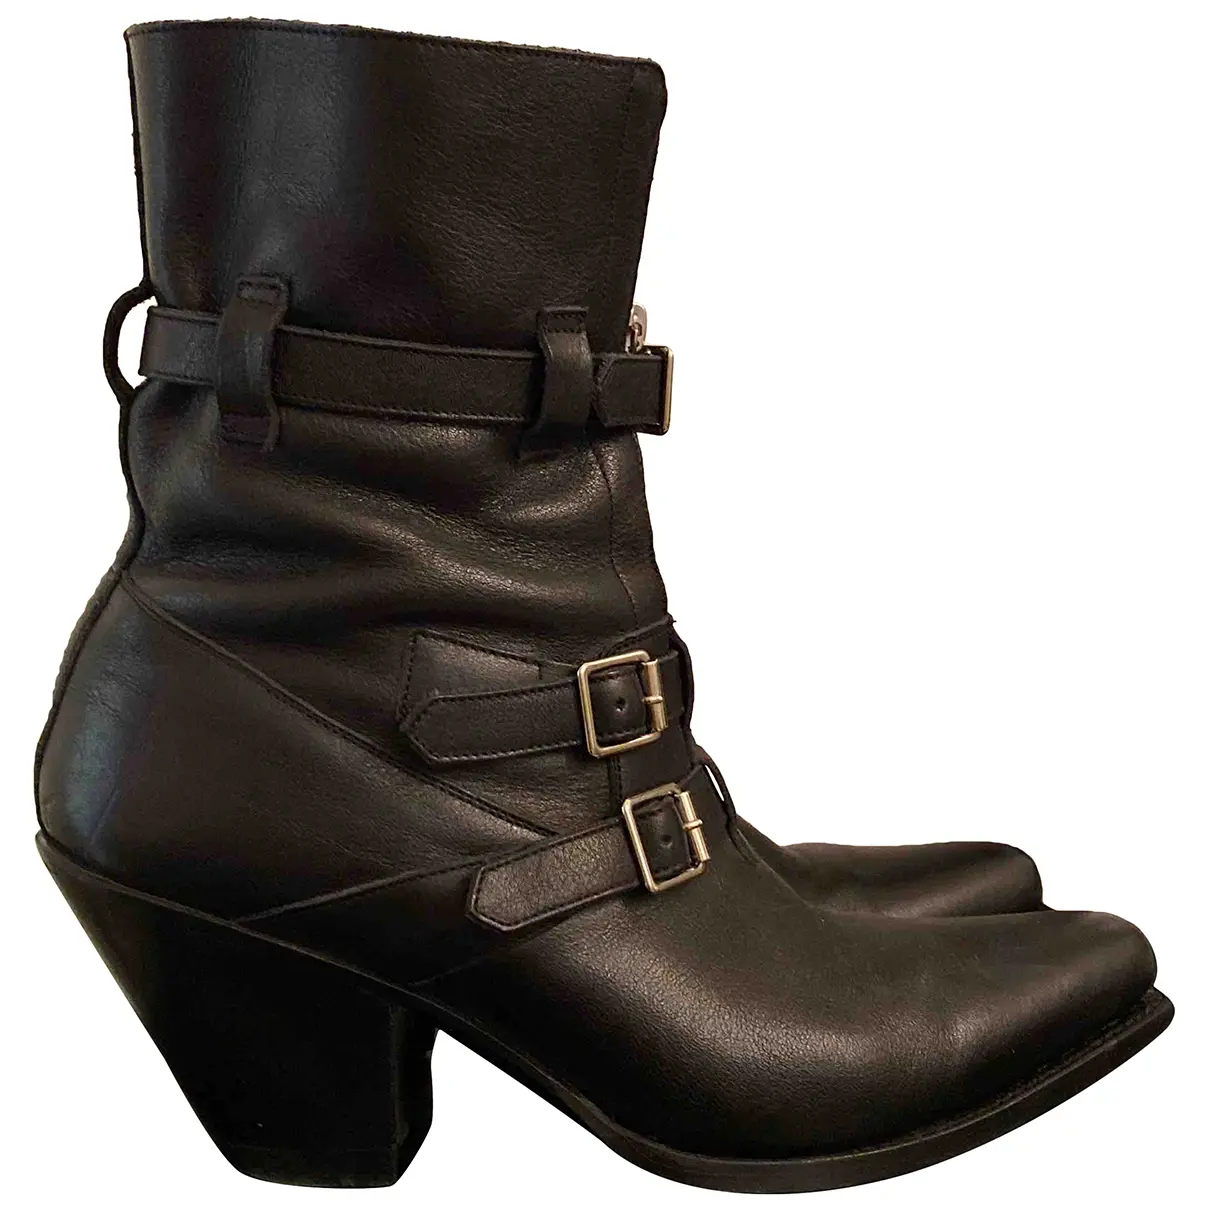 Berlin leather western boots Celine